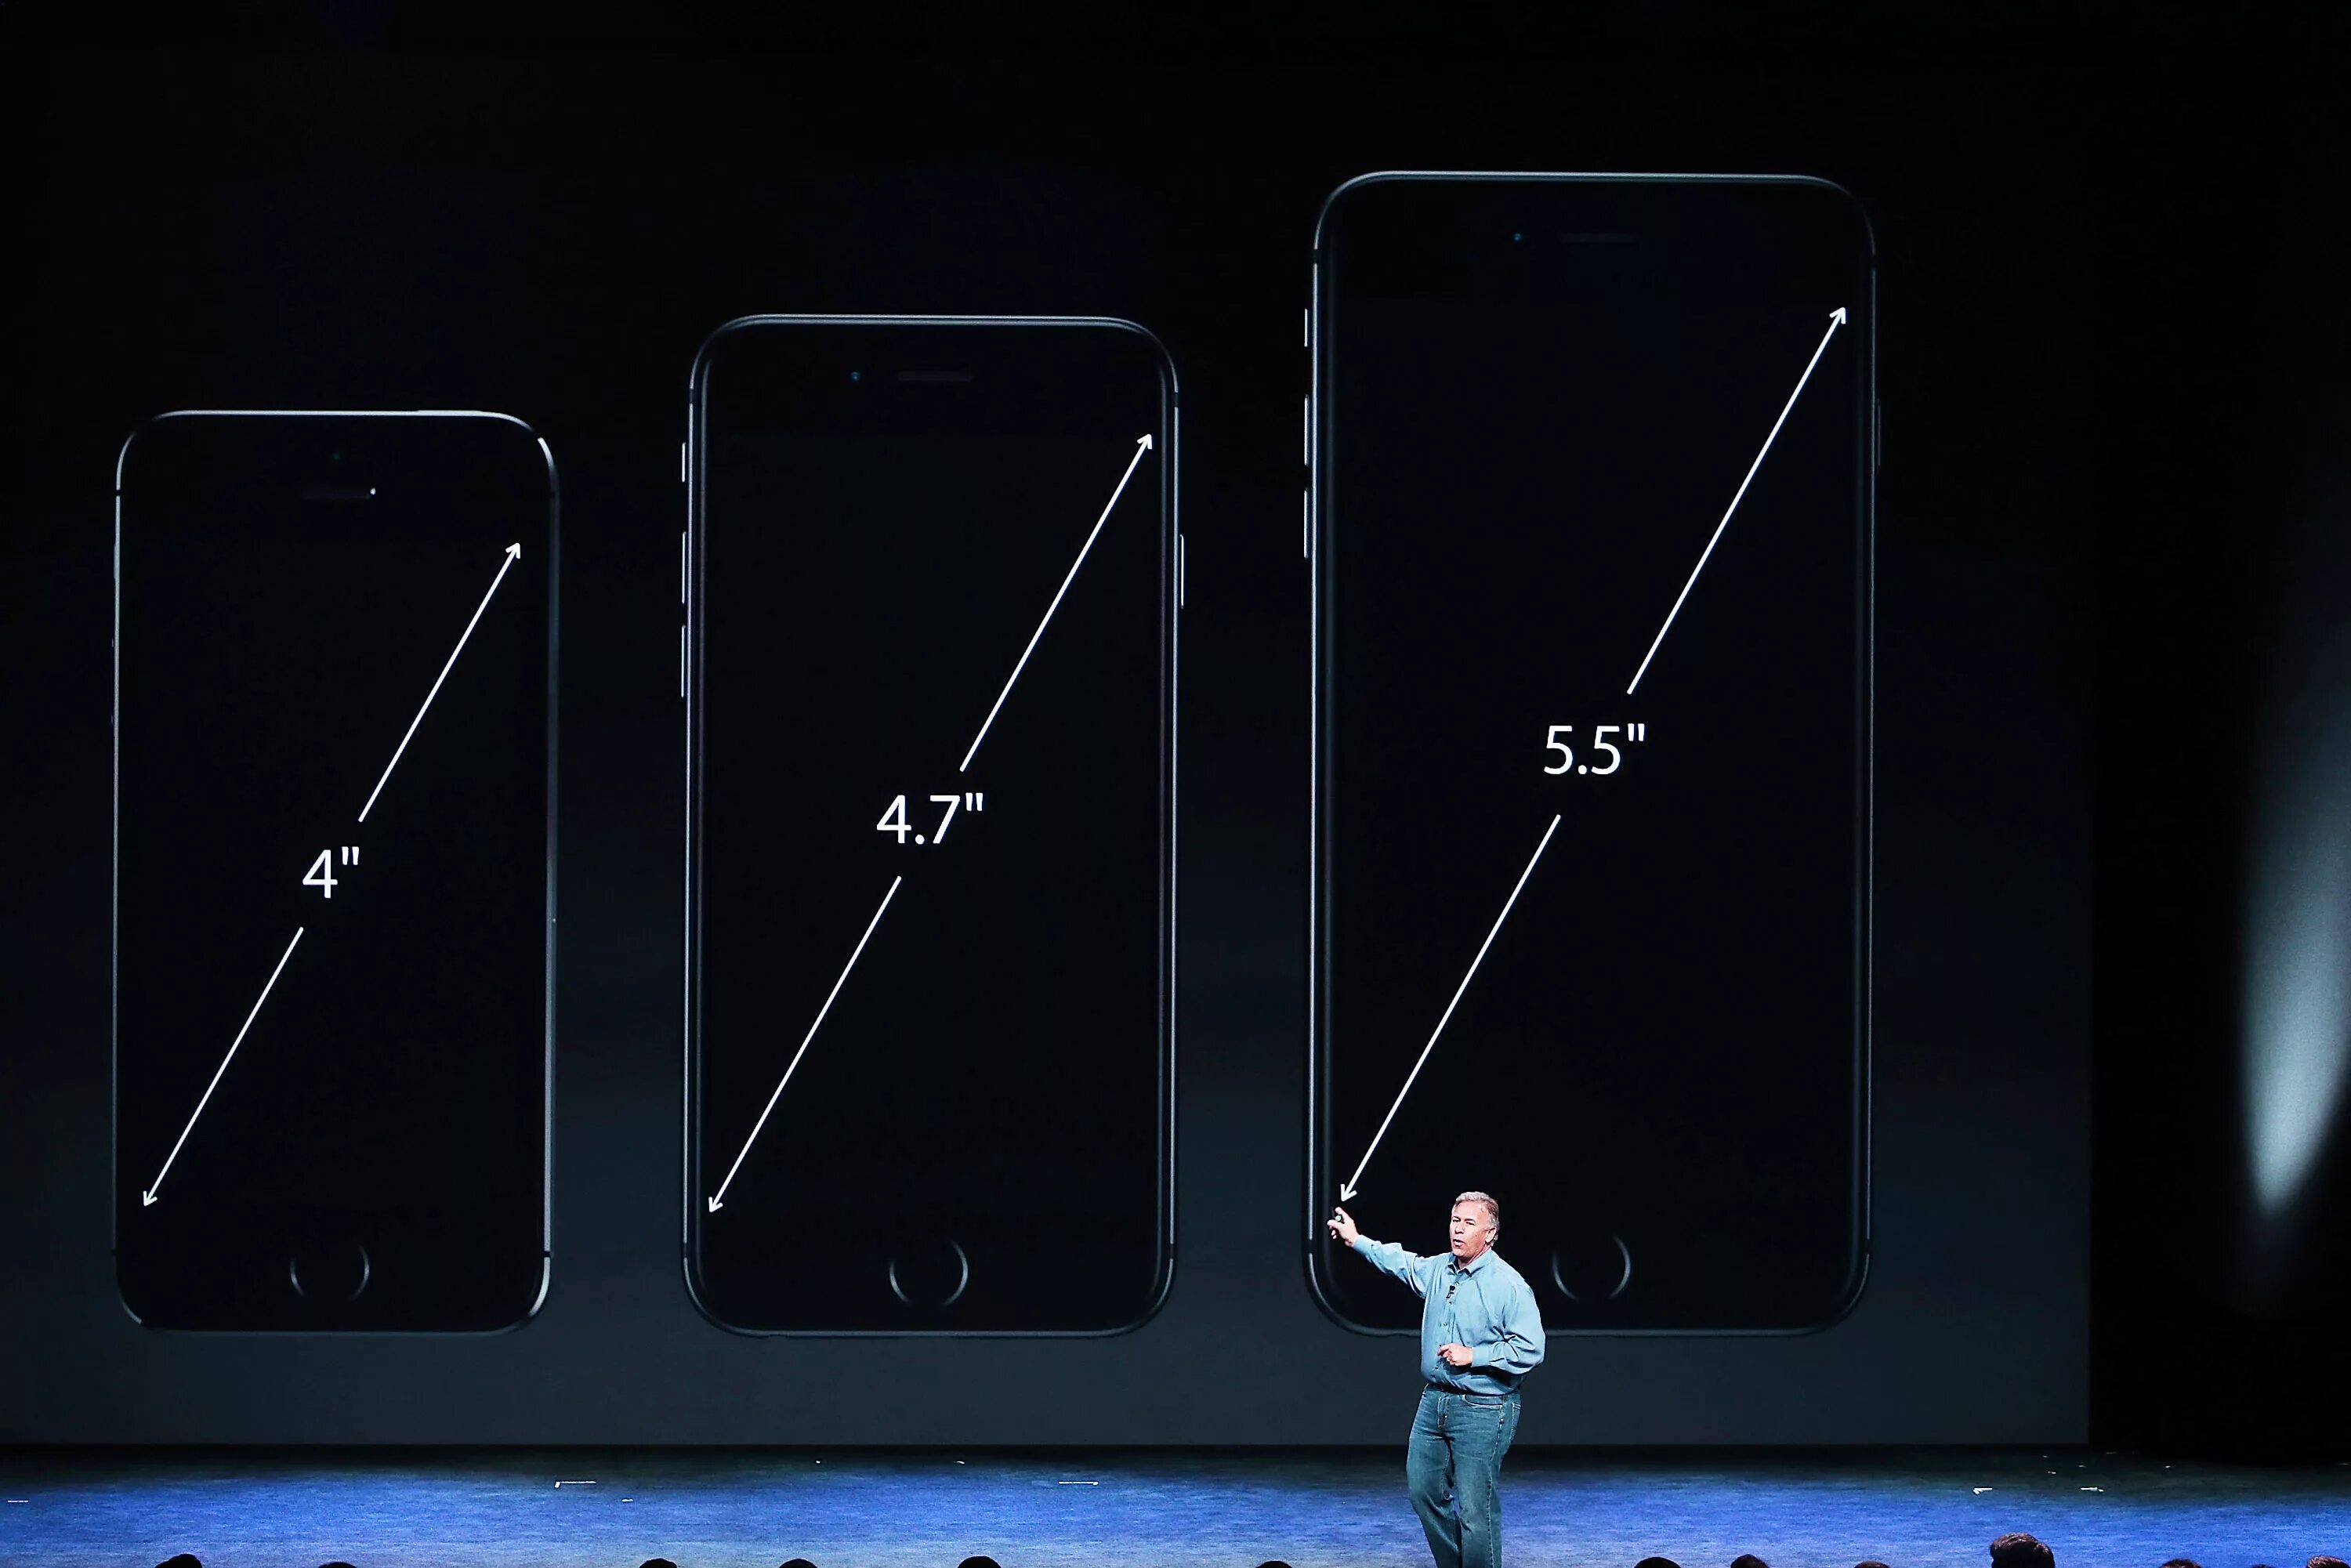 6 67 экран. Айфон 6 диагональ экрана. Iphone 6 Plus диагональ экрана. Айфон диагональ 6.1. Айфон 6s диагональ экрана.